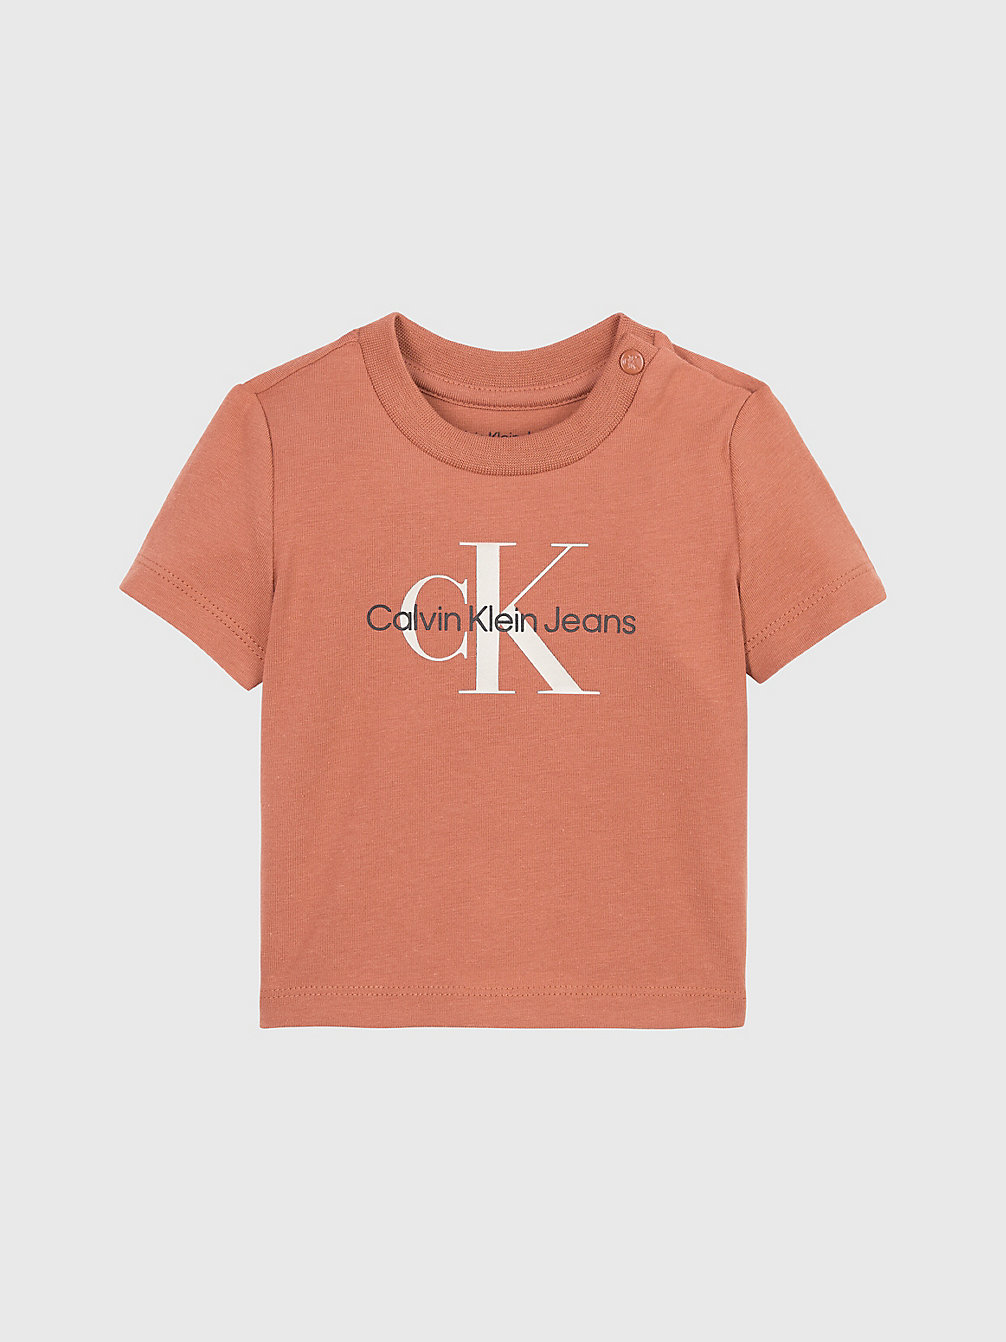 AUBURN Newborn Logo T-Shirt undefined newborn Calvin Klein